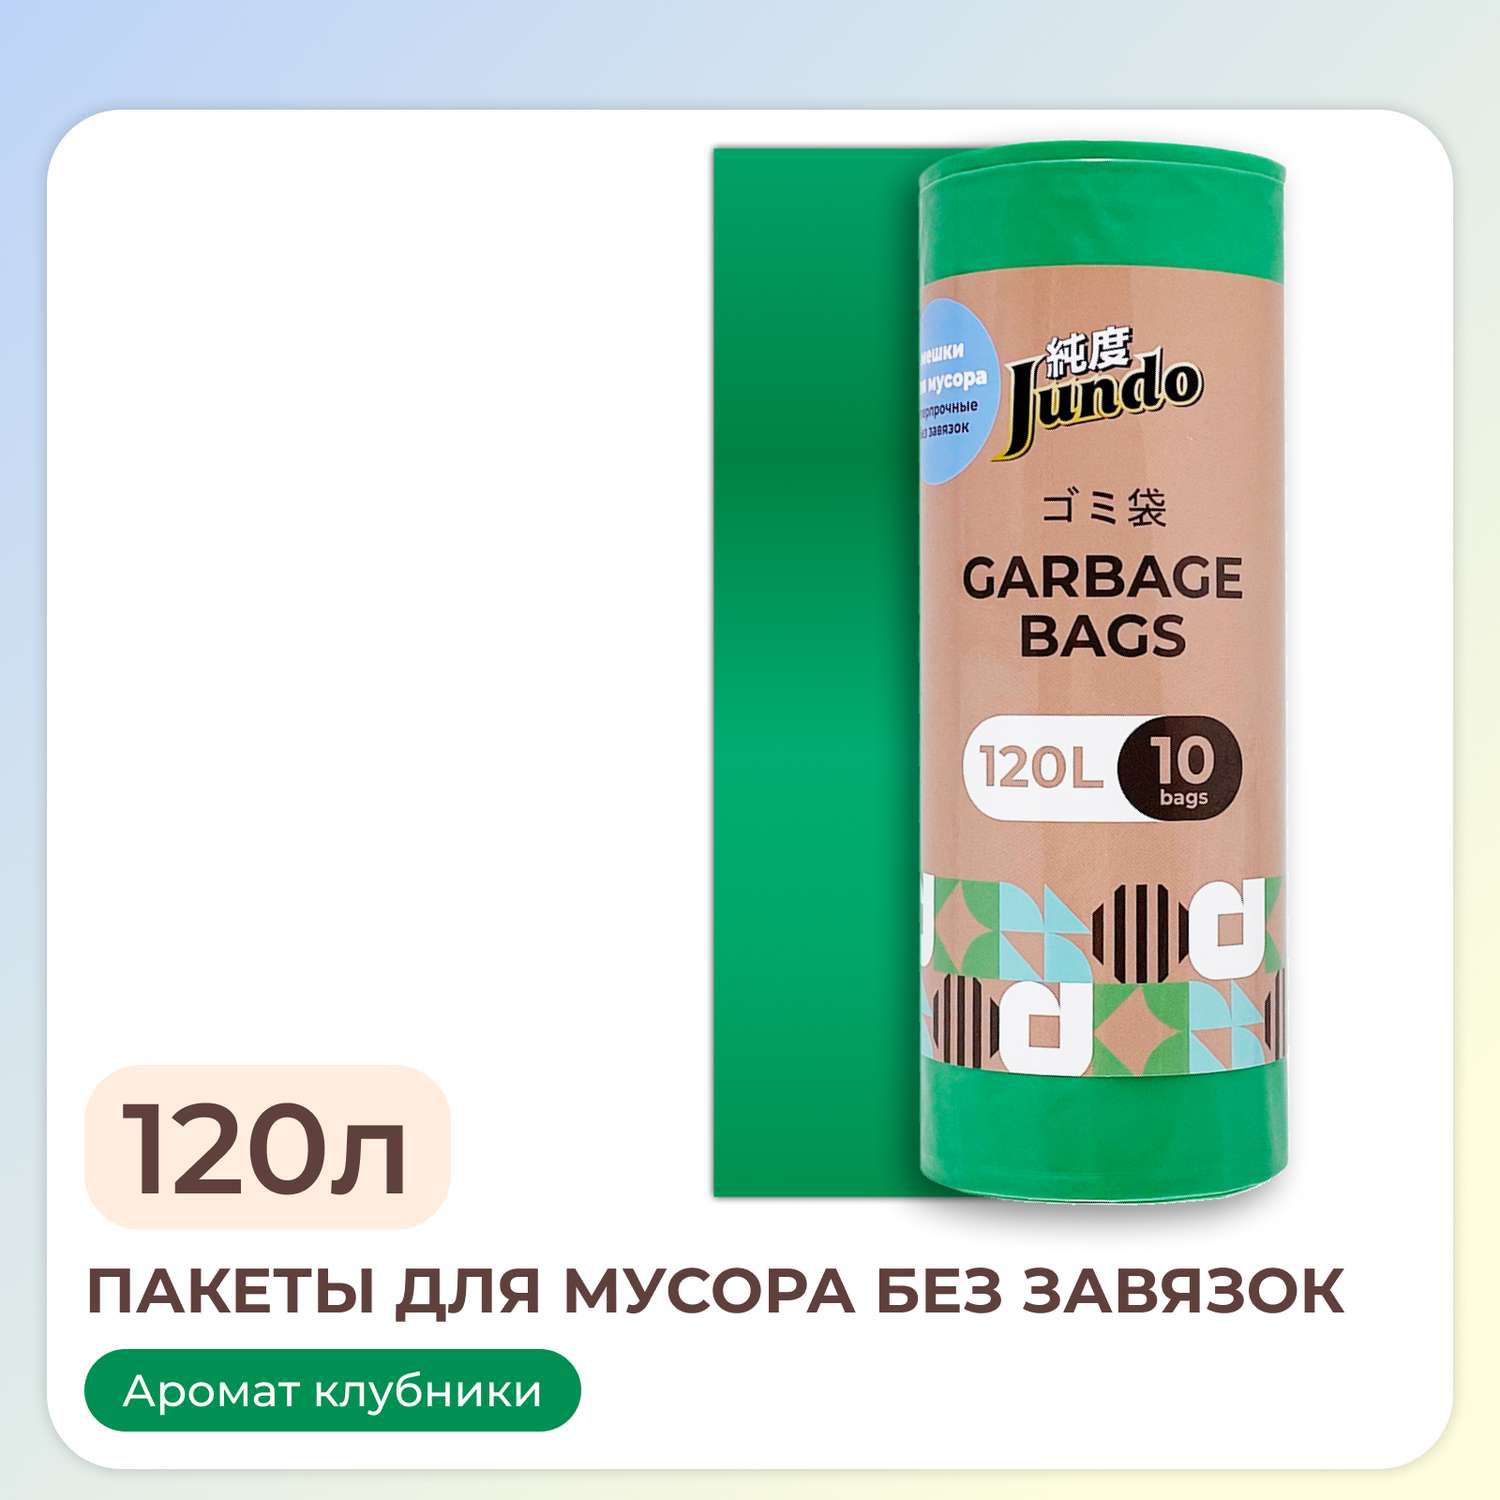 Пакеты для мусора Jundo Garbage bags без завязок 120л 10шт 30 мкм ароматизированные - фото 1